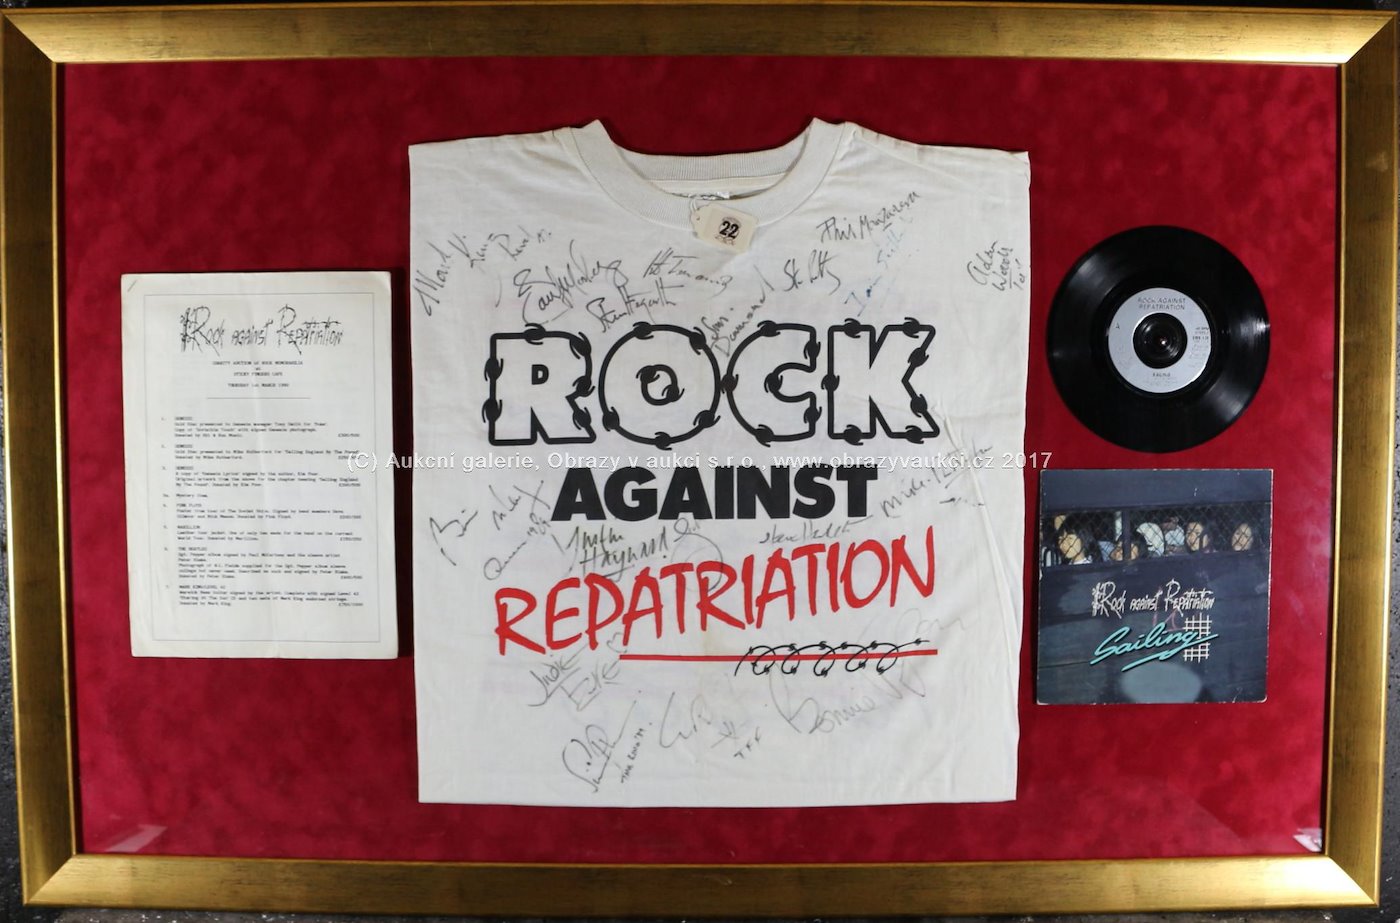 . - Rock Against Repatriation